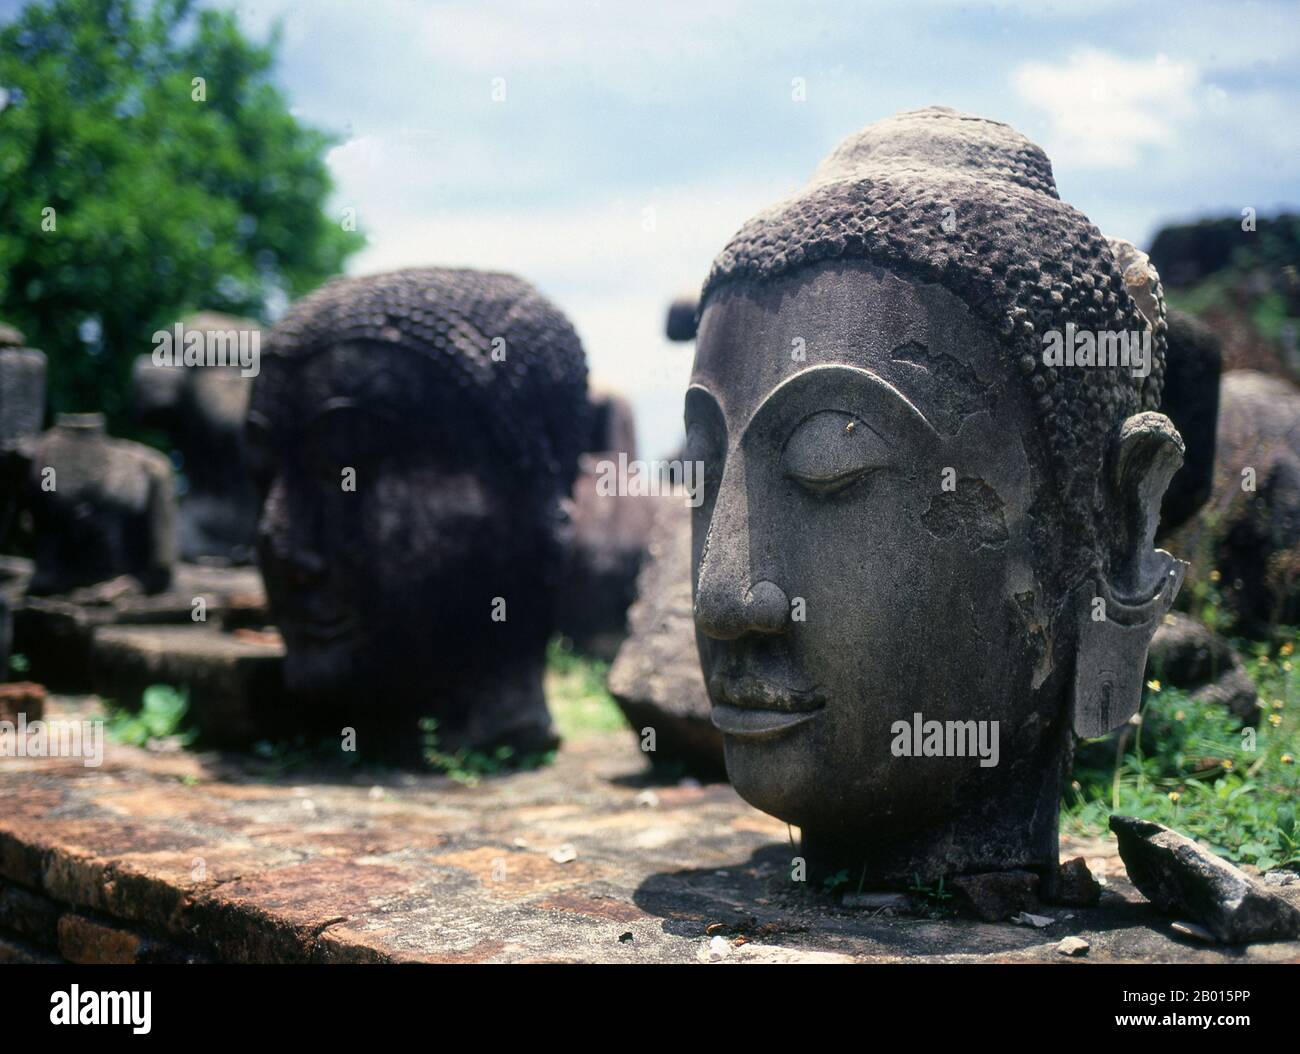 Thailandia: Il Buddha si dirige nel Parco storico di Ayutthaya. Ayutthaya (Ayudhya) era un regno siamese che esisteva dal 1351 al 1767. Ayutthaya era amichevole verso i commercianti stranieri, compreso il cinese, vietnamita (Annamese), indiani, giapponesi e persiani, E poi i portoghesi, spagnoli, olandesi e francesi, permettendo loro di creare villaggi fuori dalle mura della città. Nel sedicesimo secolo, è stato descritto dai commercianti stranieri come una delle città più grandi e più ricche nell'est. La corte del re Narai (1656-1688) aveva forti legami con quella del re Luigi XIV di Francia. Foto Stock